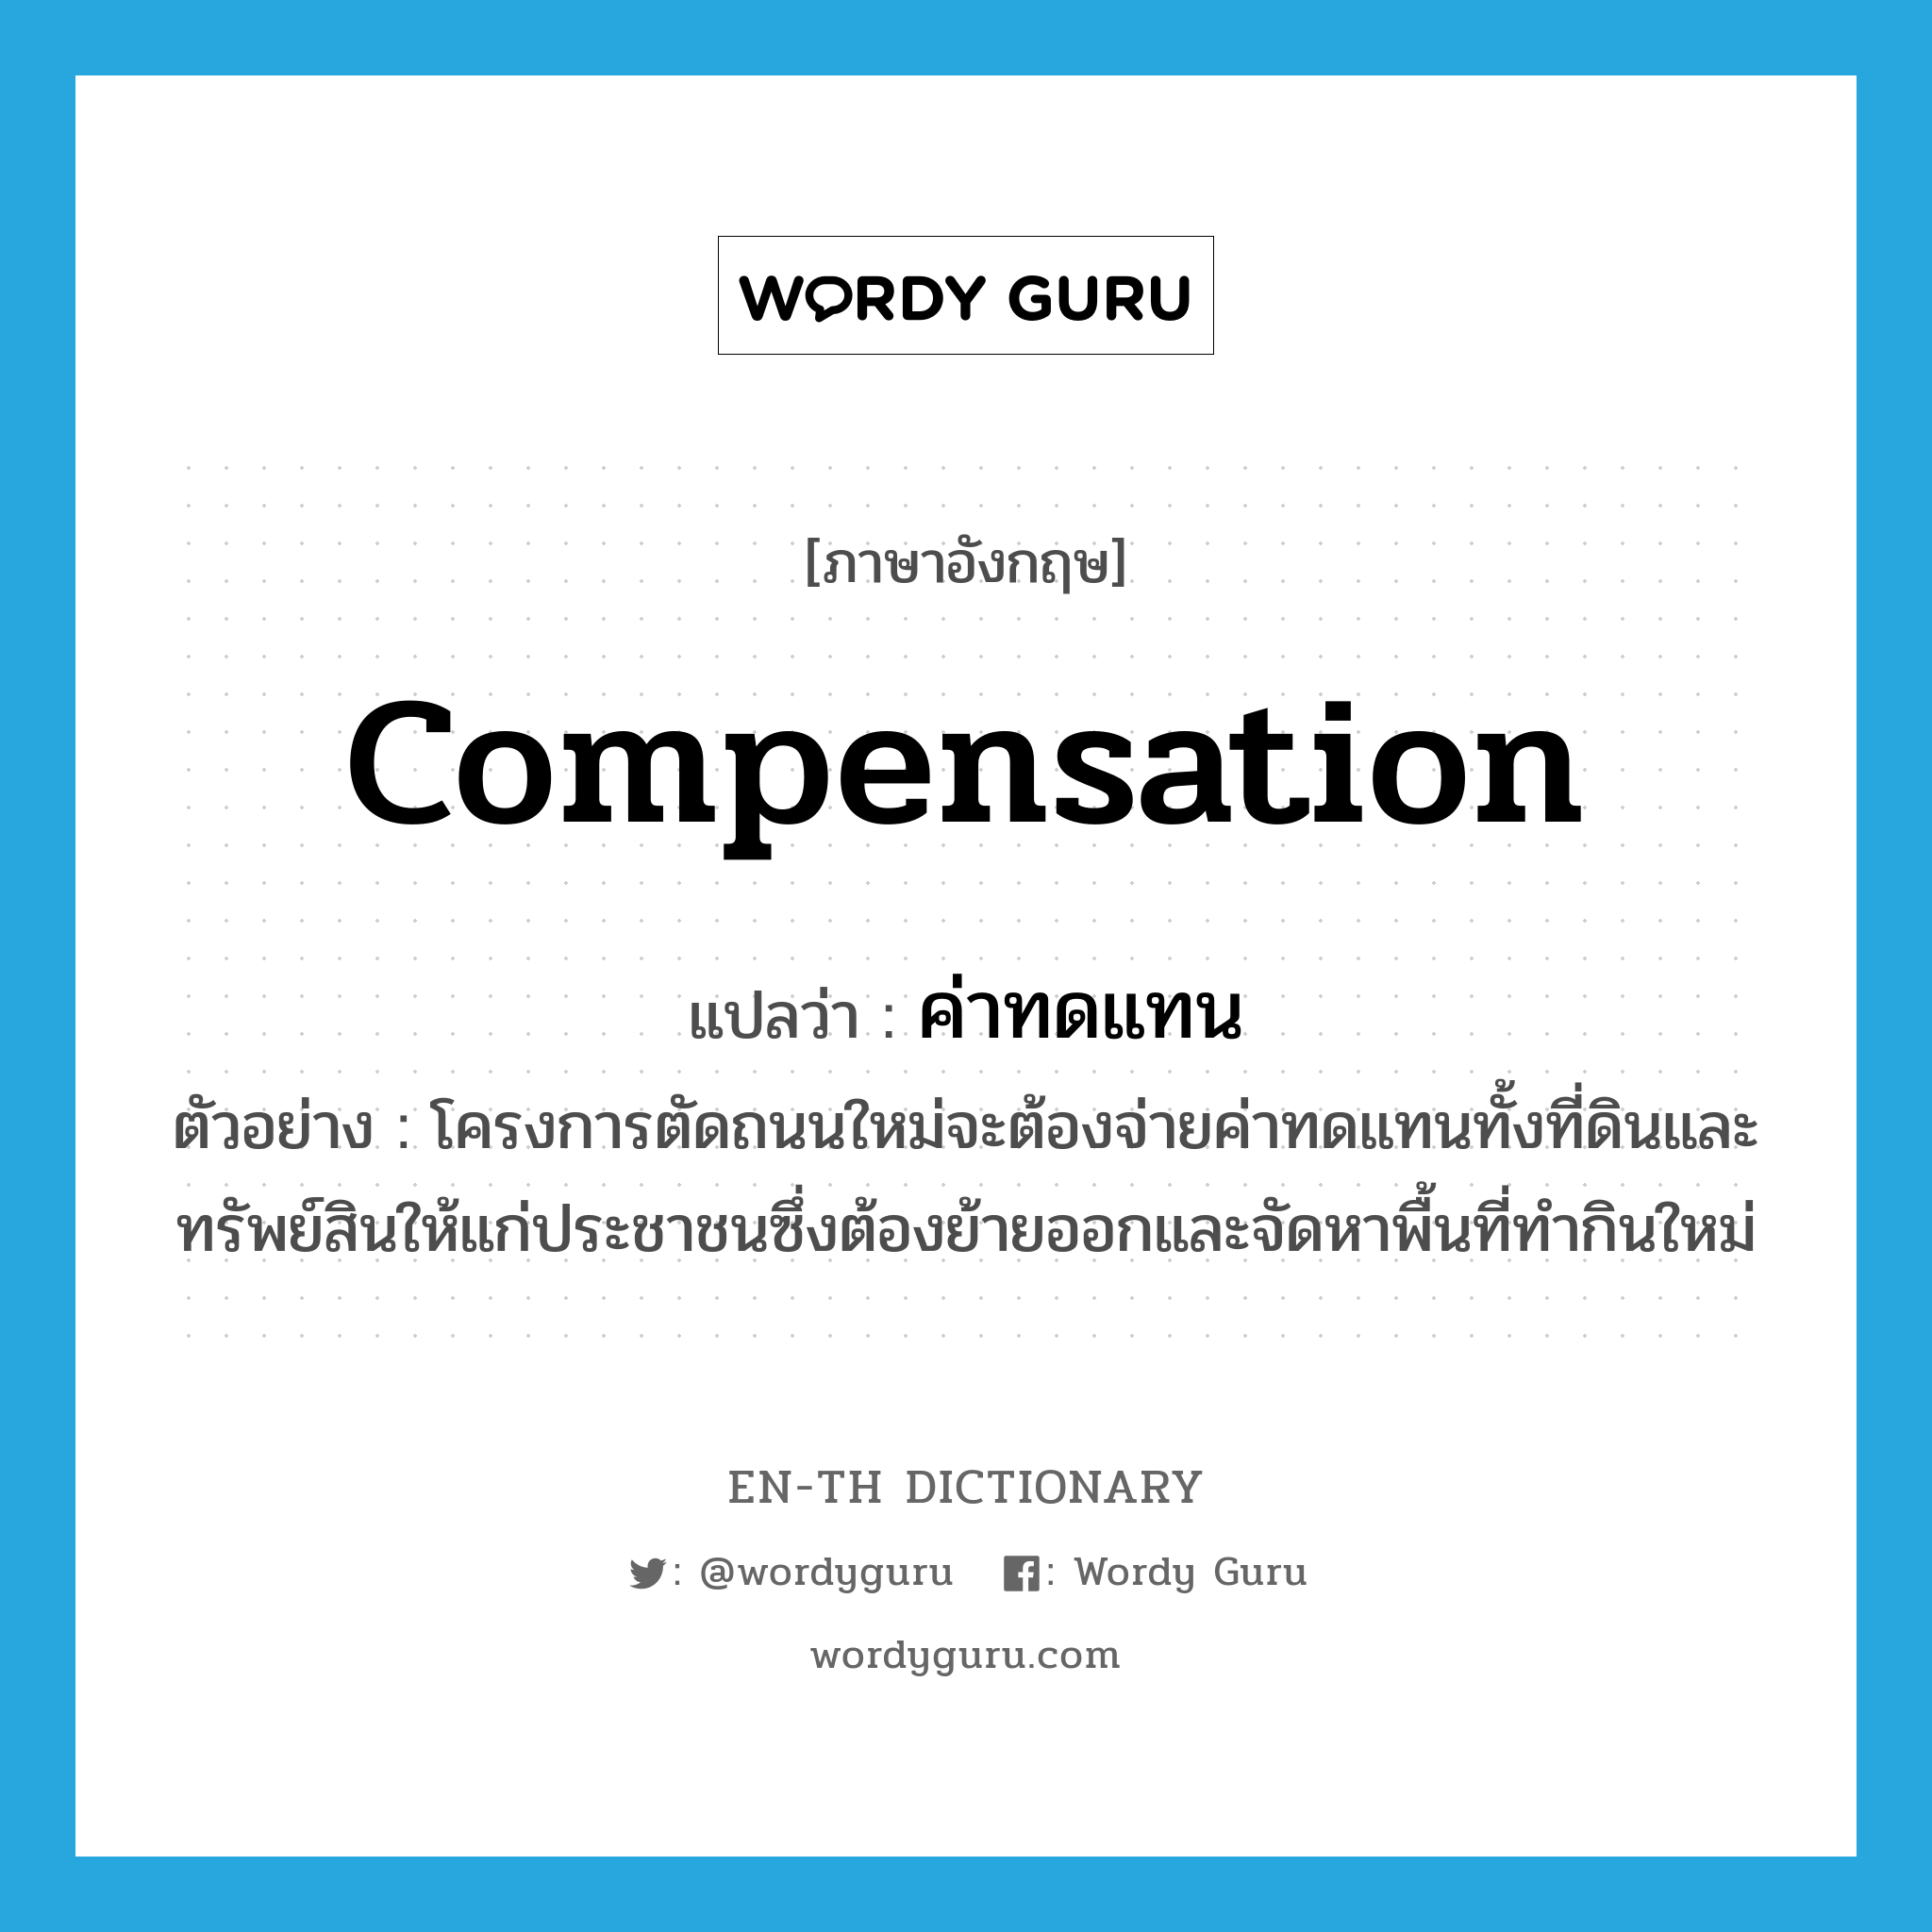 compensation แปลว่า?, คำศัพท์ภาษาอังกฤษ compensation แปลว่า ค่าทดแทน ประเภท N ตัวอย่าง โครงการตัดถนนใหม่จะต้องจ่ายค่าทดแทนทั้งที่ดินและทรัพย์สินให้แก่ประชาชนซึ่งต้องย้ายออกและจัดหาพื้นที่ทำกินใหม่ หมวด N